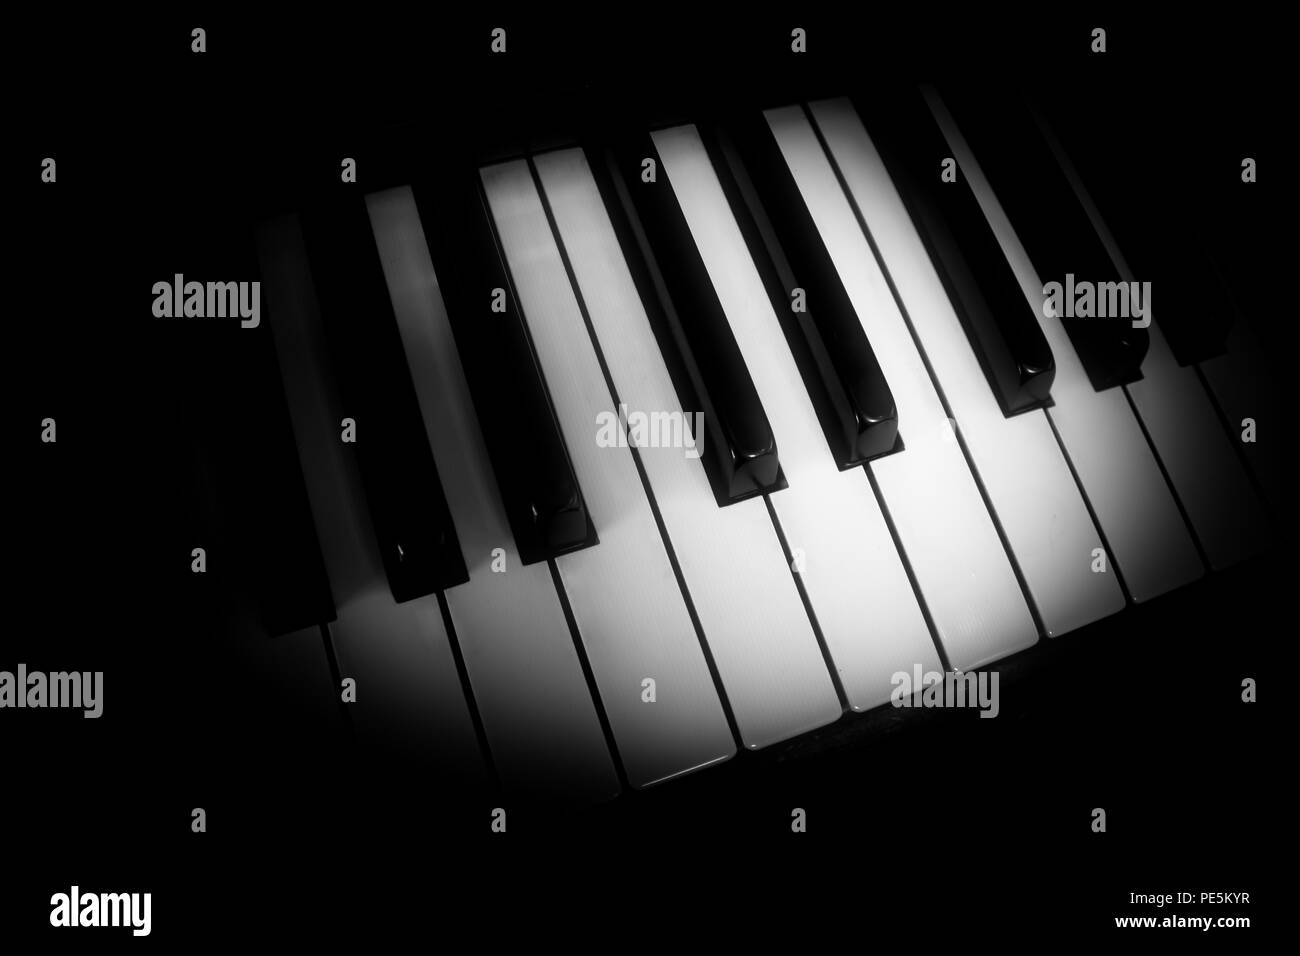 Tutte calettate su: Bright tasti di pianoforte con ombre e contrasti di colore nero. Adatto per riviste e hotel/motel lobby e camere. Foto Stock